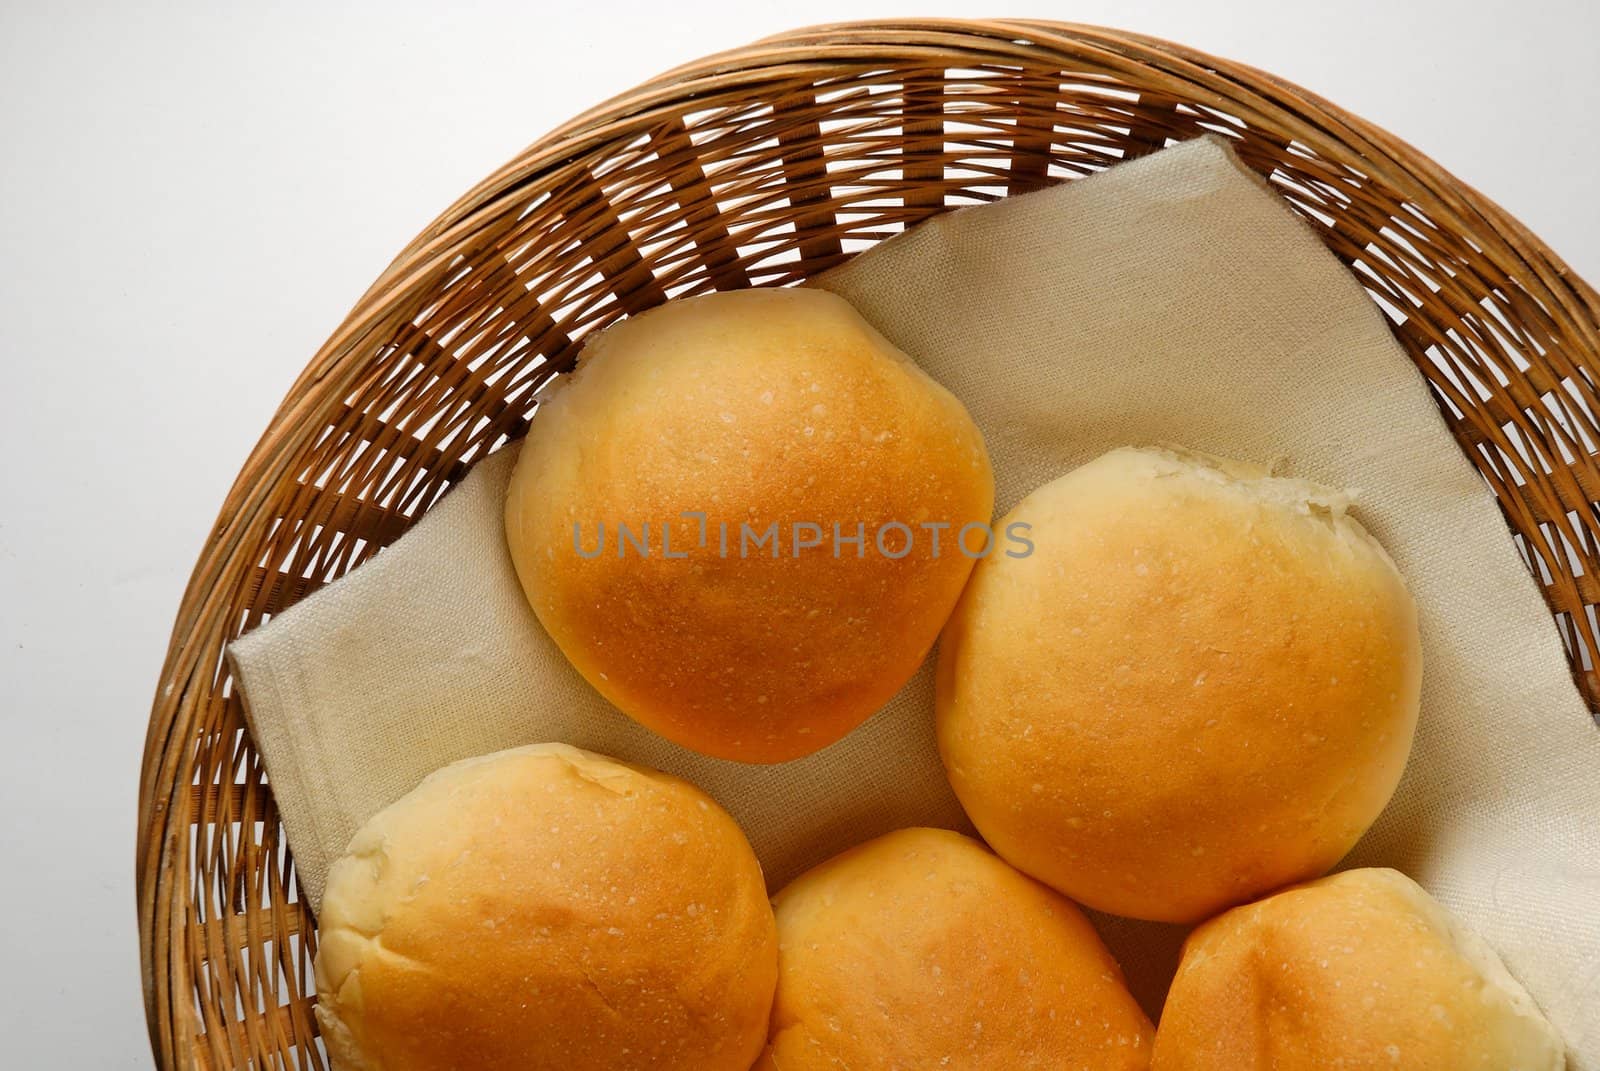 Bread rolls in basket